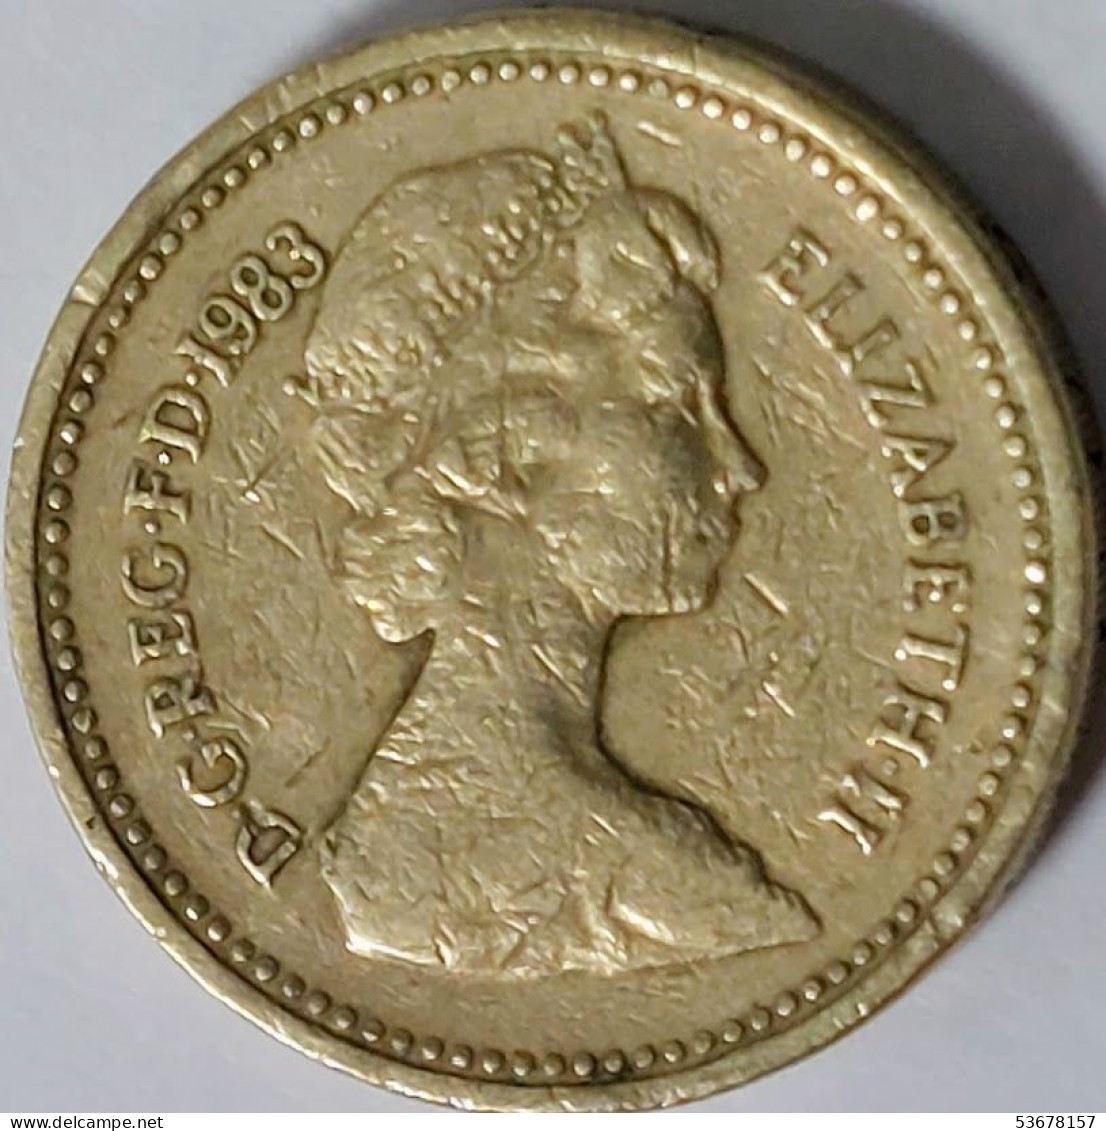 Great Britain - Pound 1983, KM# 933 (#2337) - 1 Pound